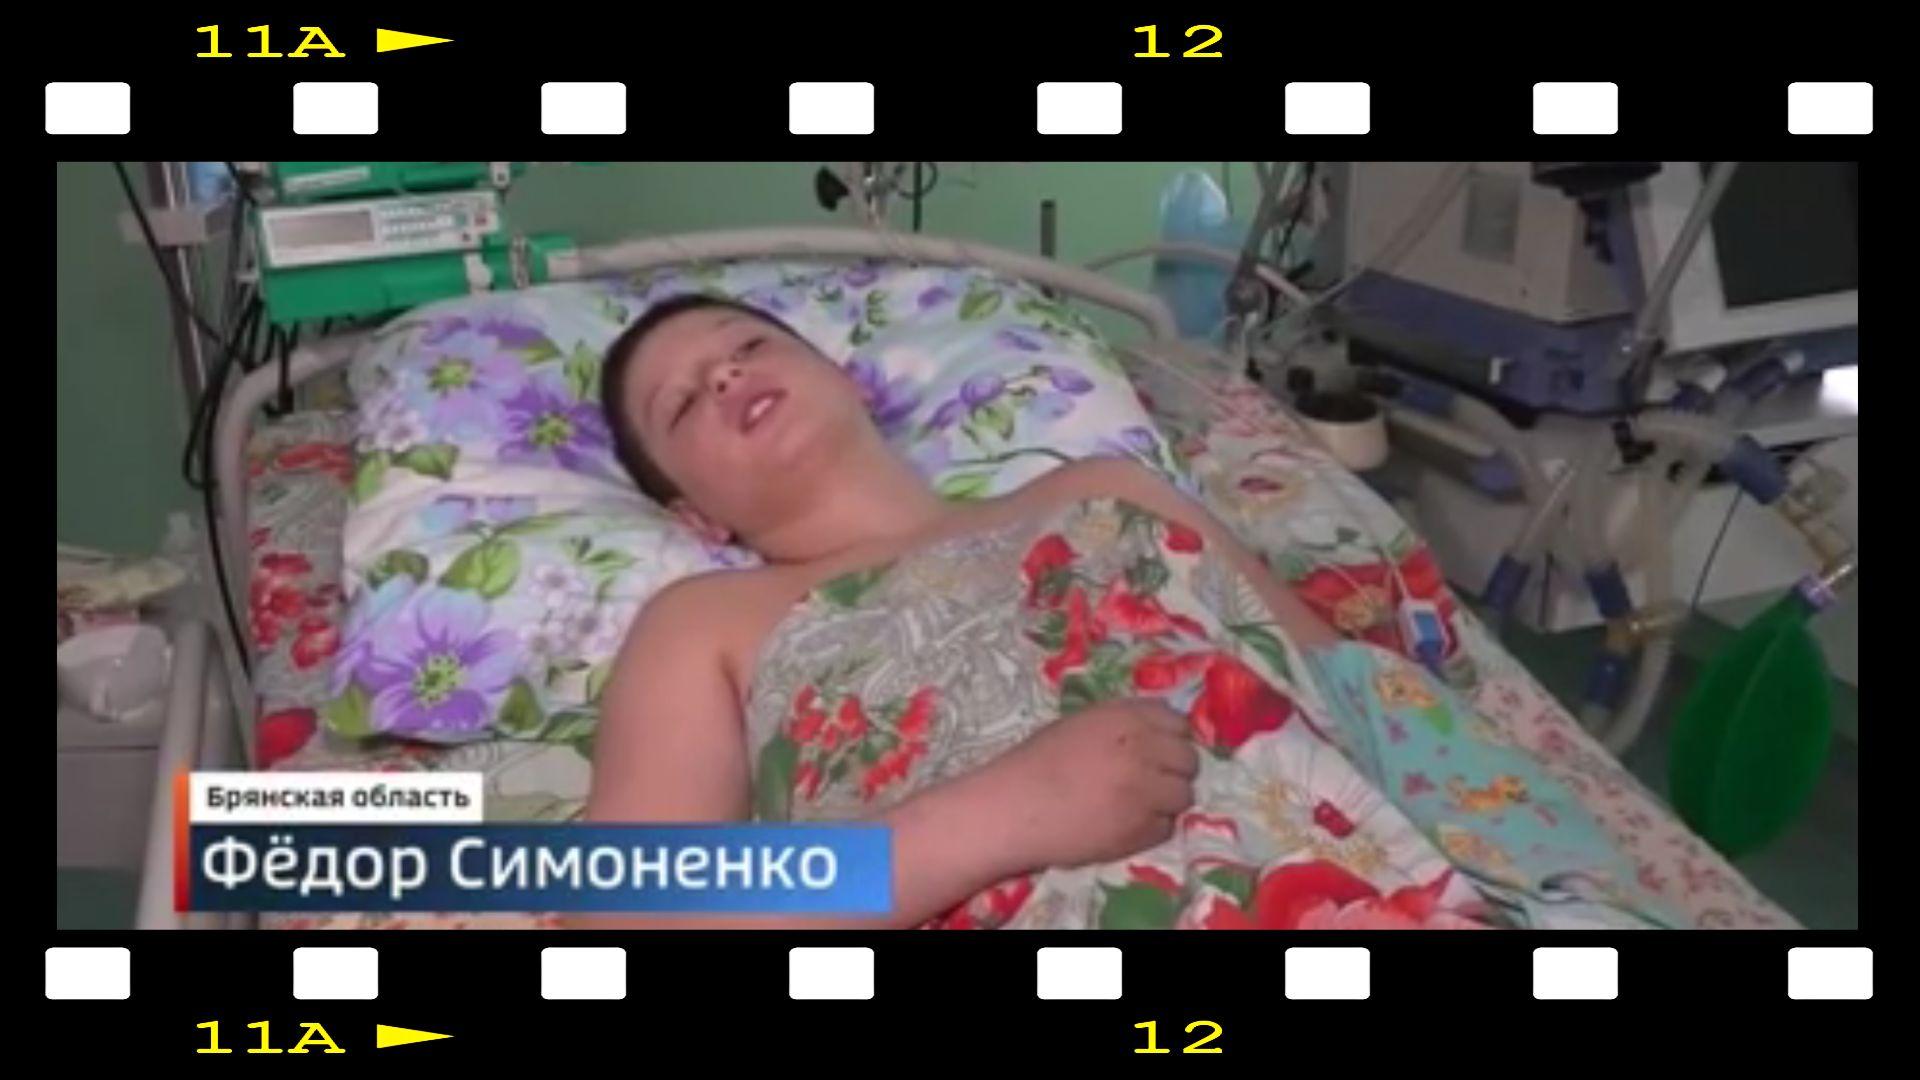 W ramkę kliszy filmowej wkleone zdjęcie chłopca w łóżku szpitalnym pod kolorową kołdrą w duże czerwone kwiaty